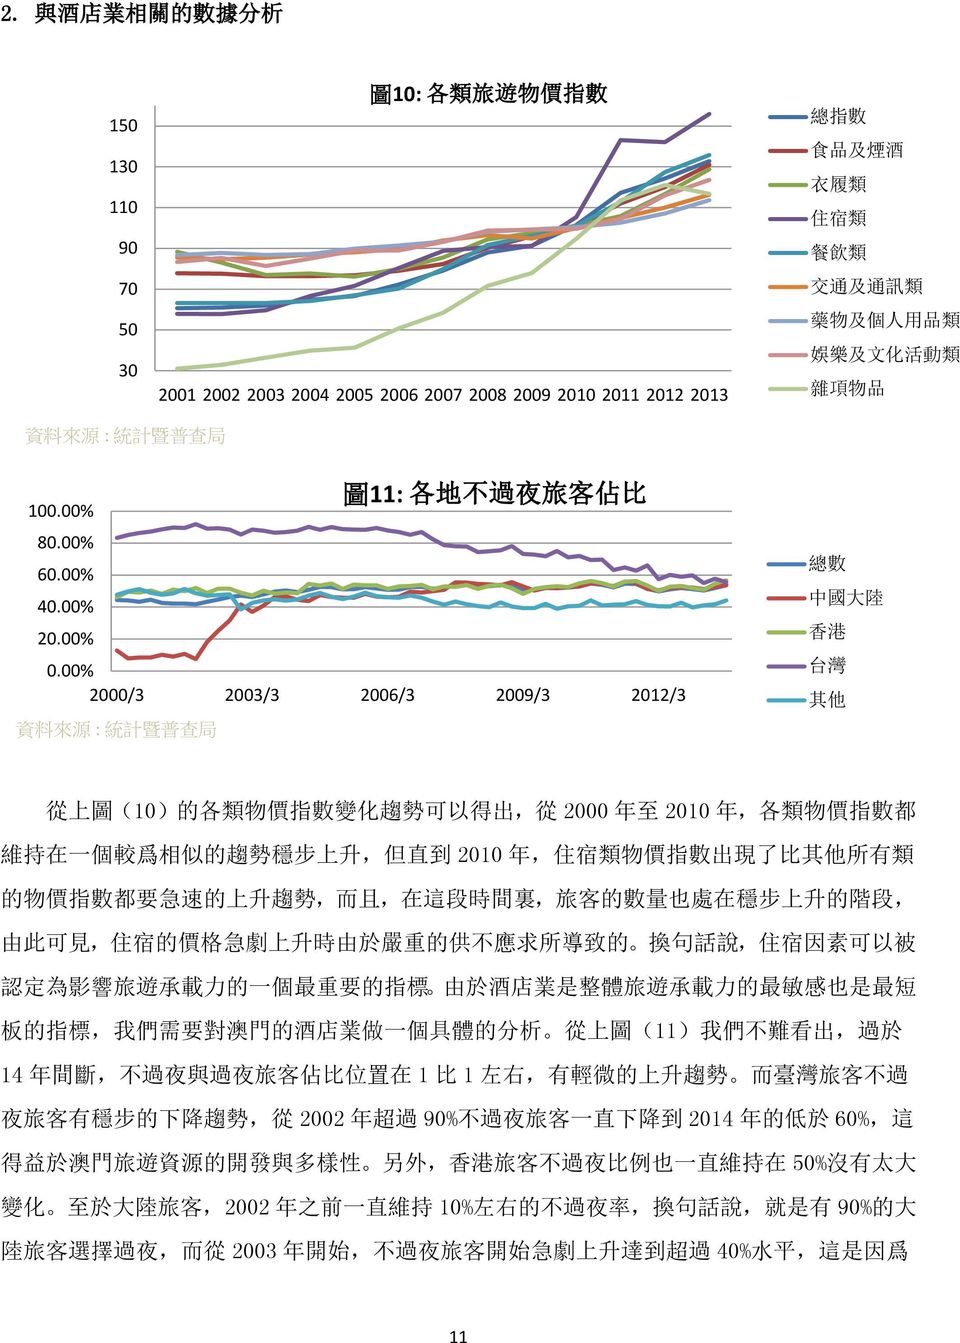 00% 2000/3 2003/3 2006/3 2009/3 2012/3 資 料 來 源 : 統 計 暨 普 查 局 圖 11: 各 地 不 過 夜 旅 客 佔 比 總 數 中 國 大 陸 香 港 台 灣 其 他 從 上 圖 (10) 的 各 類 物 價 指 數 變 化 趨 勢 可 以 得 出, 從 2000 年 至 2010 年, 各 類 物 價 指 數 都 維 持 在 一 個 較 爲 相